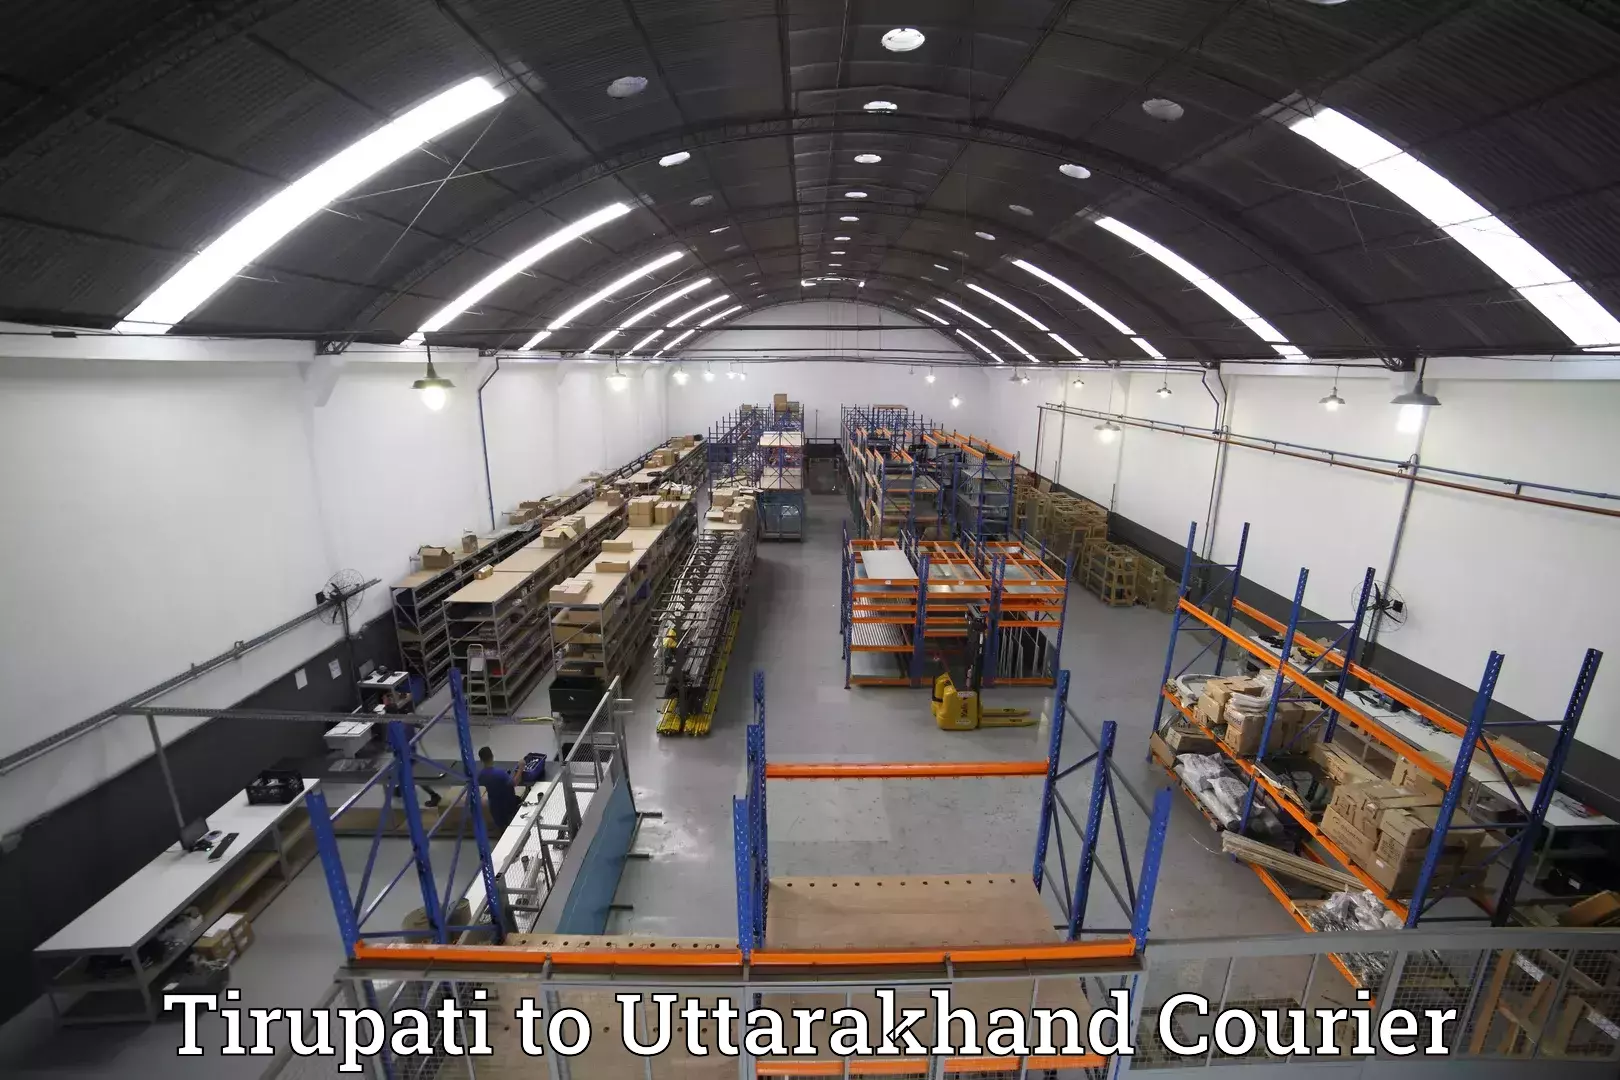 Luggage transport service Tirupati to Pithoragarh